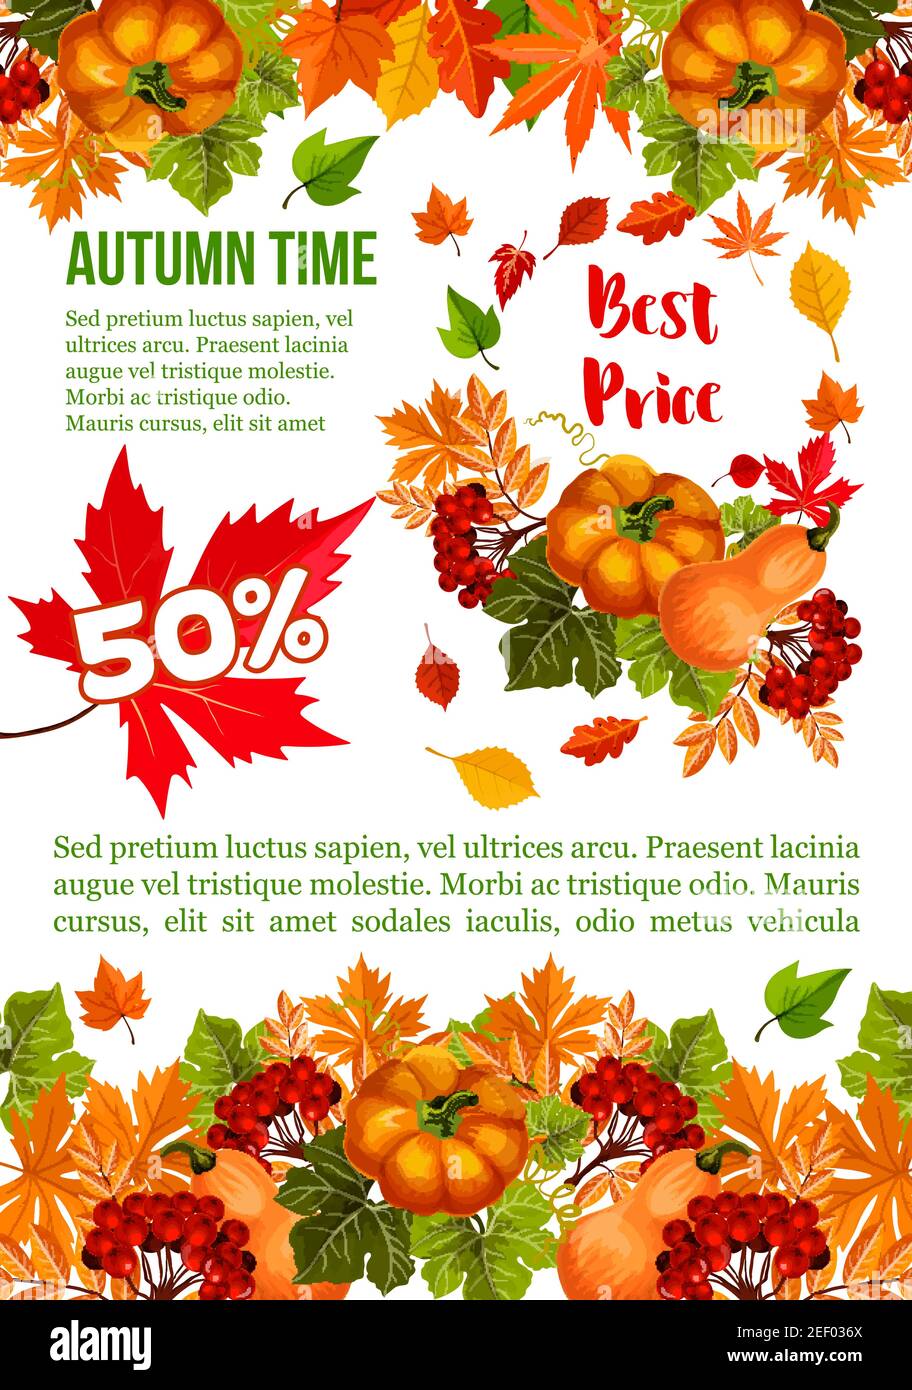 Autumn harvest specials